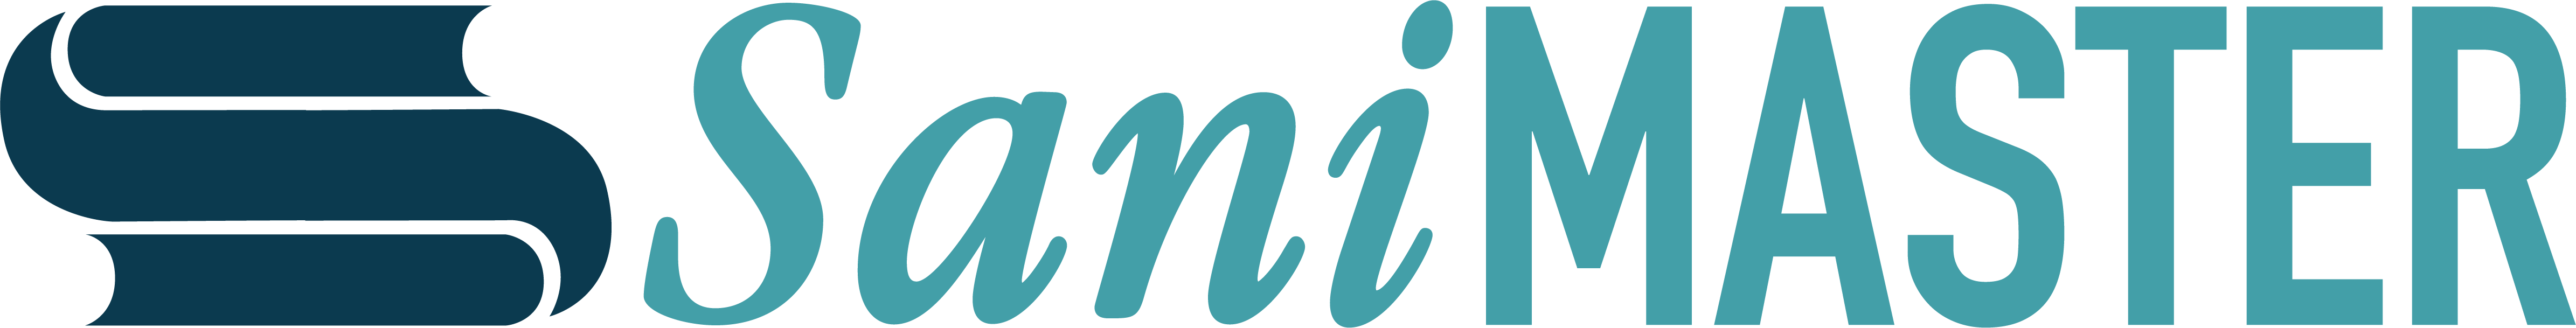 sanimaster logo